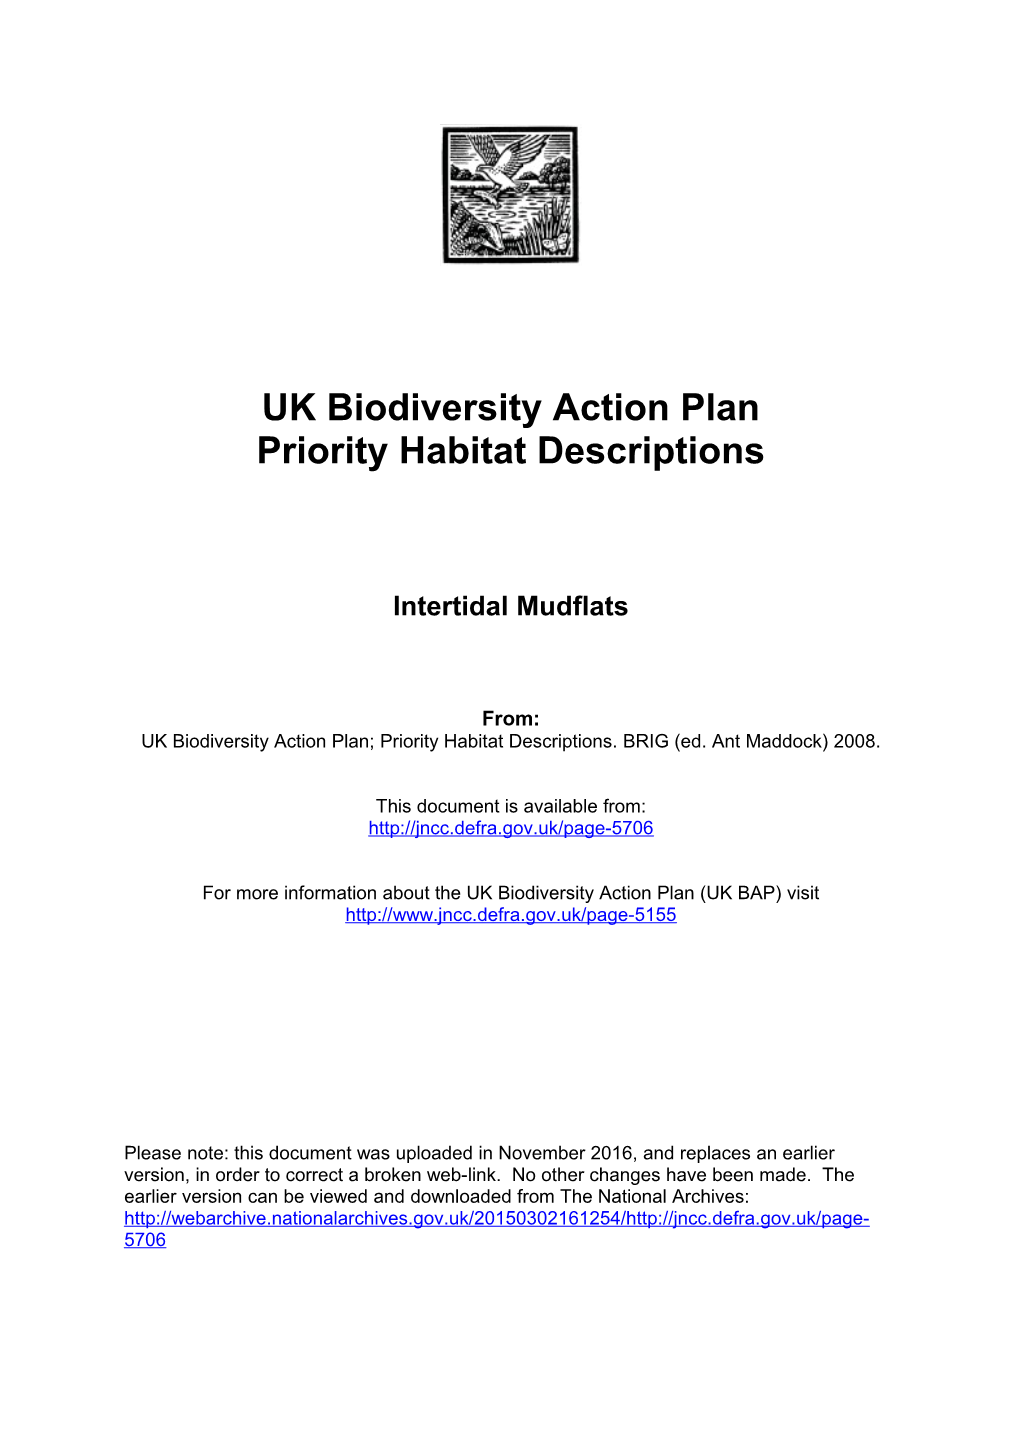 UK Biodiversity Action Plan s2